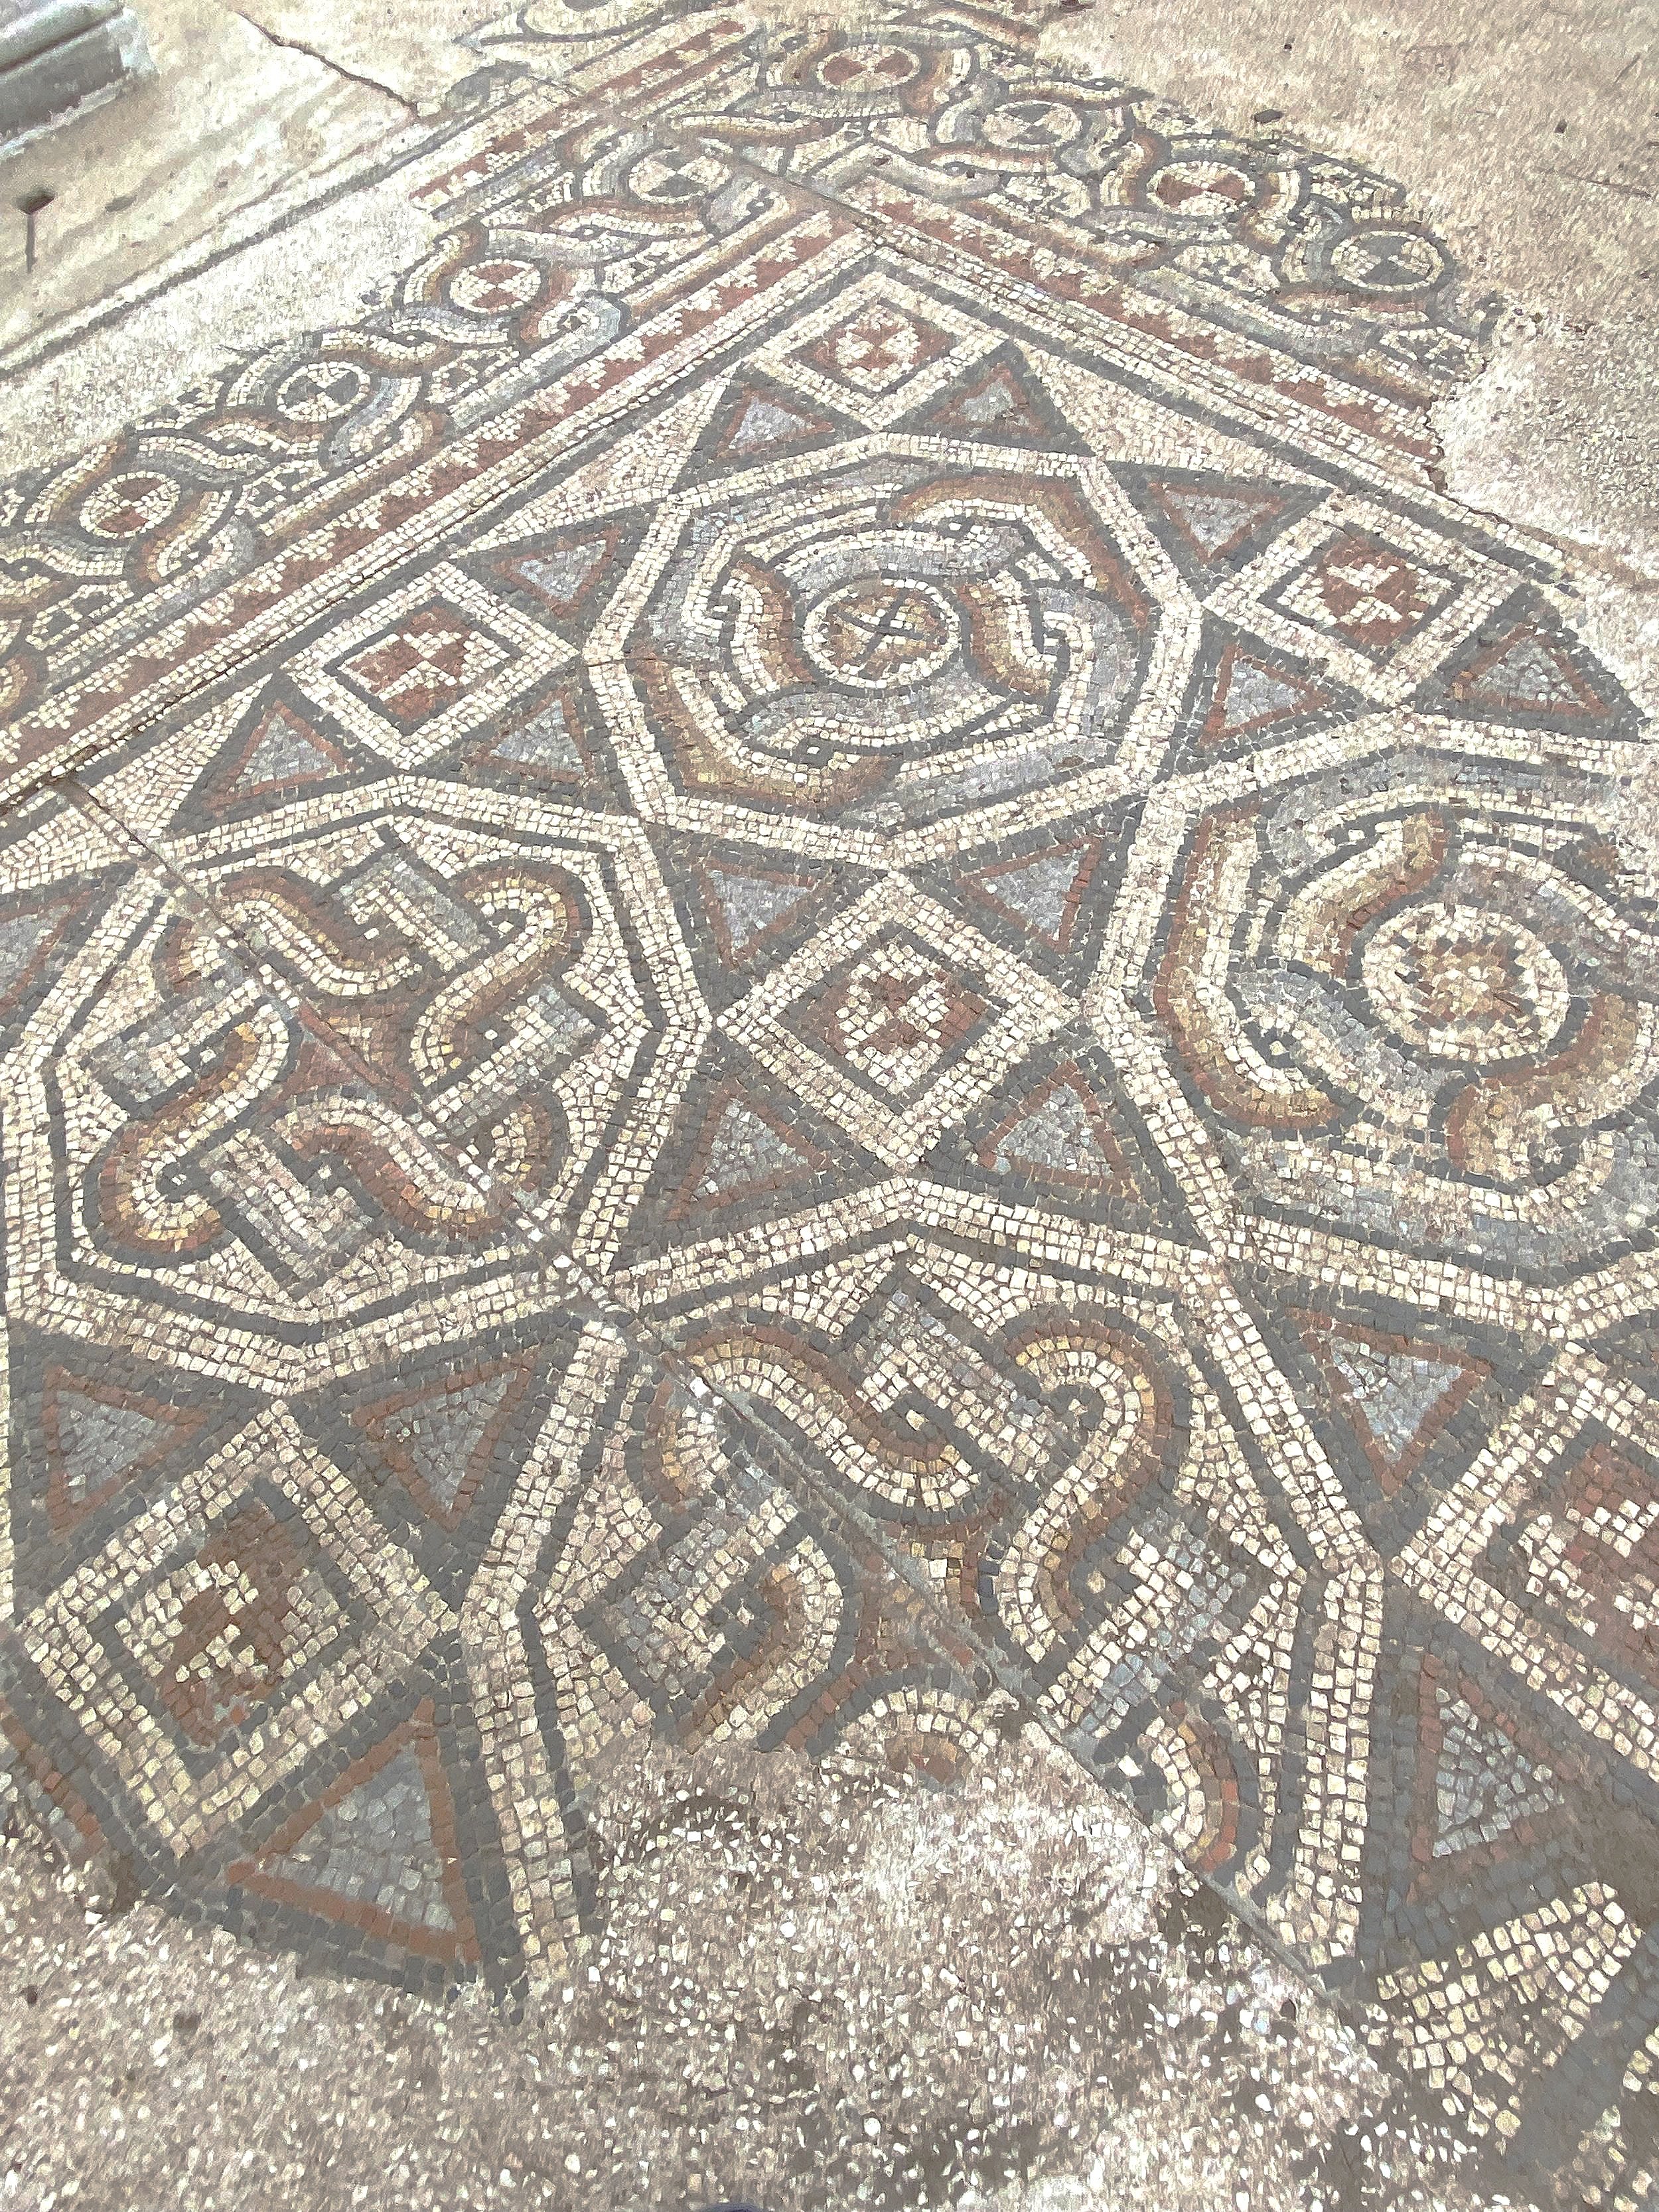 A mosaic floor at the Sardis synagogue.